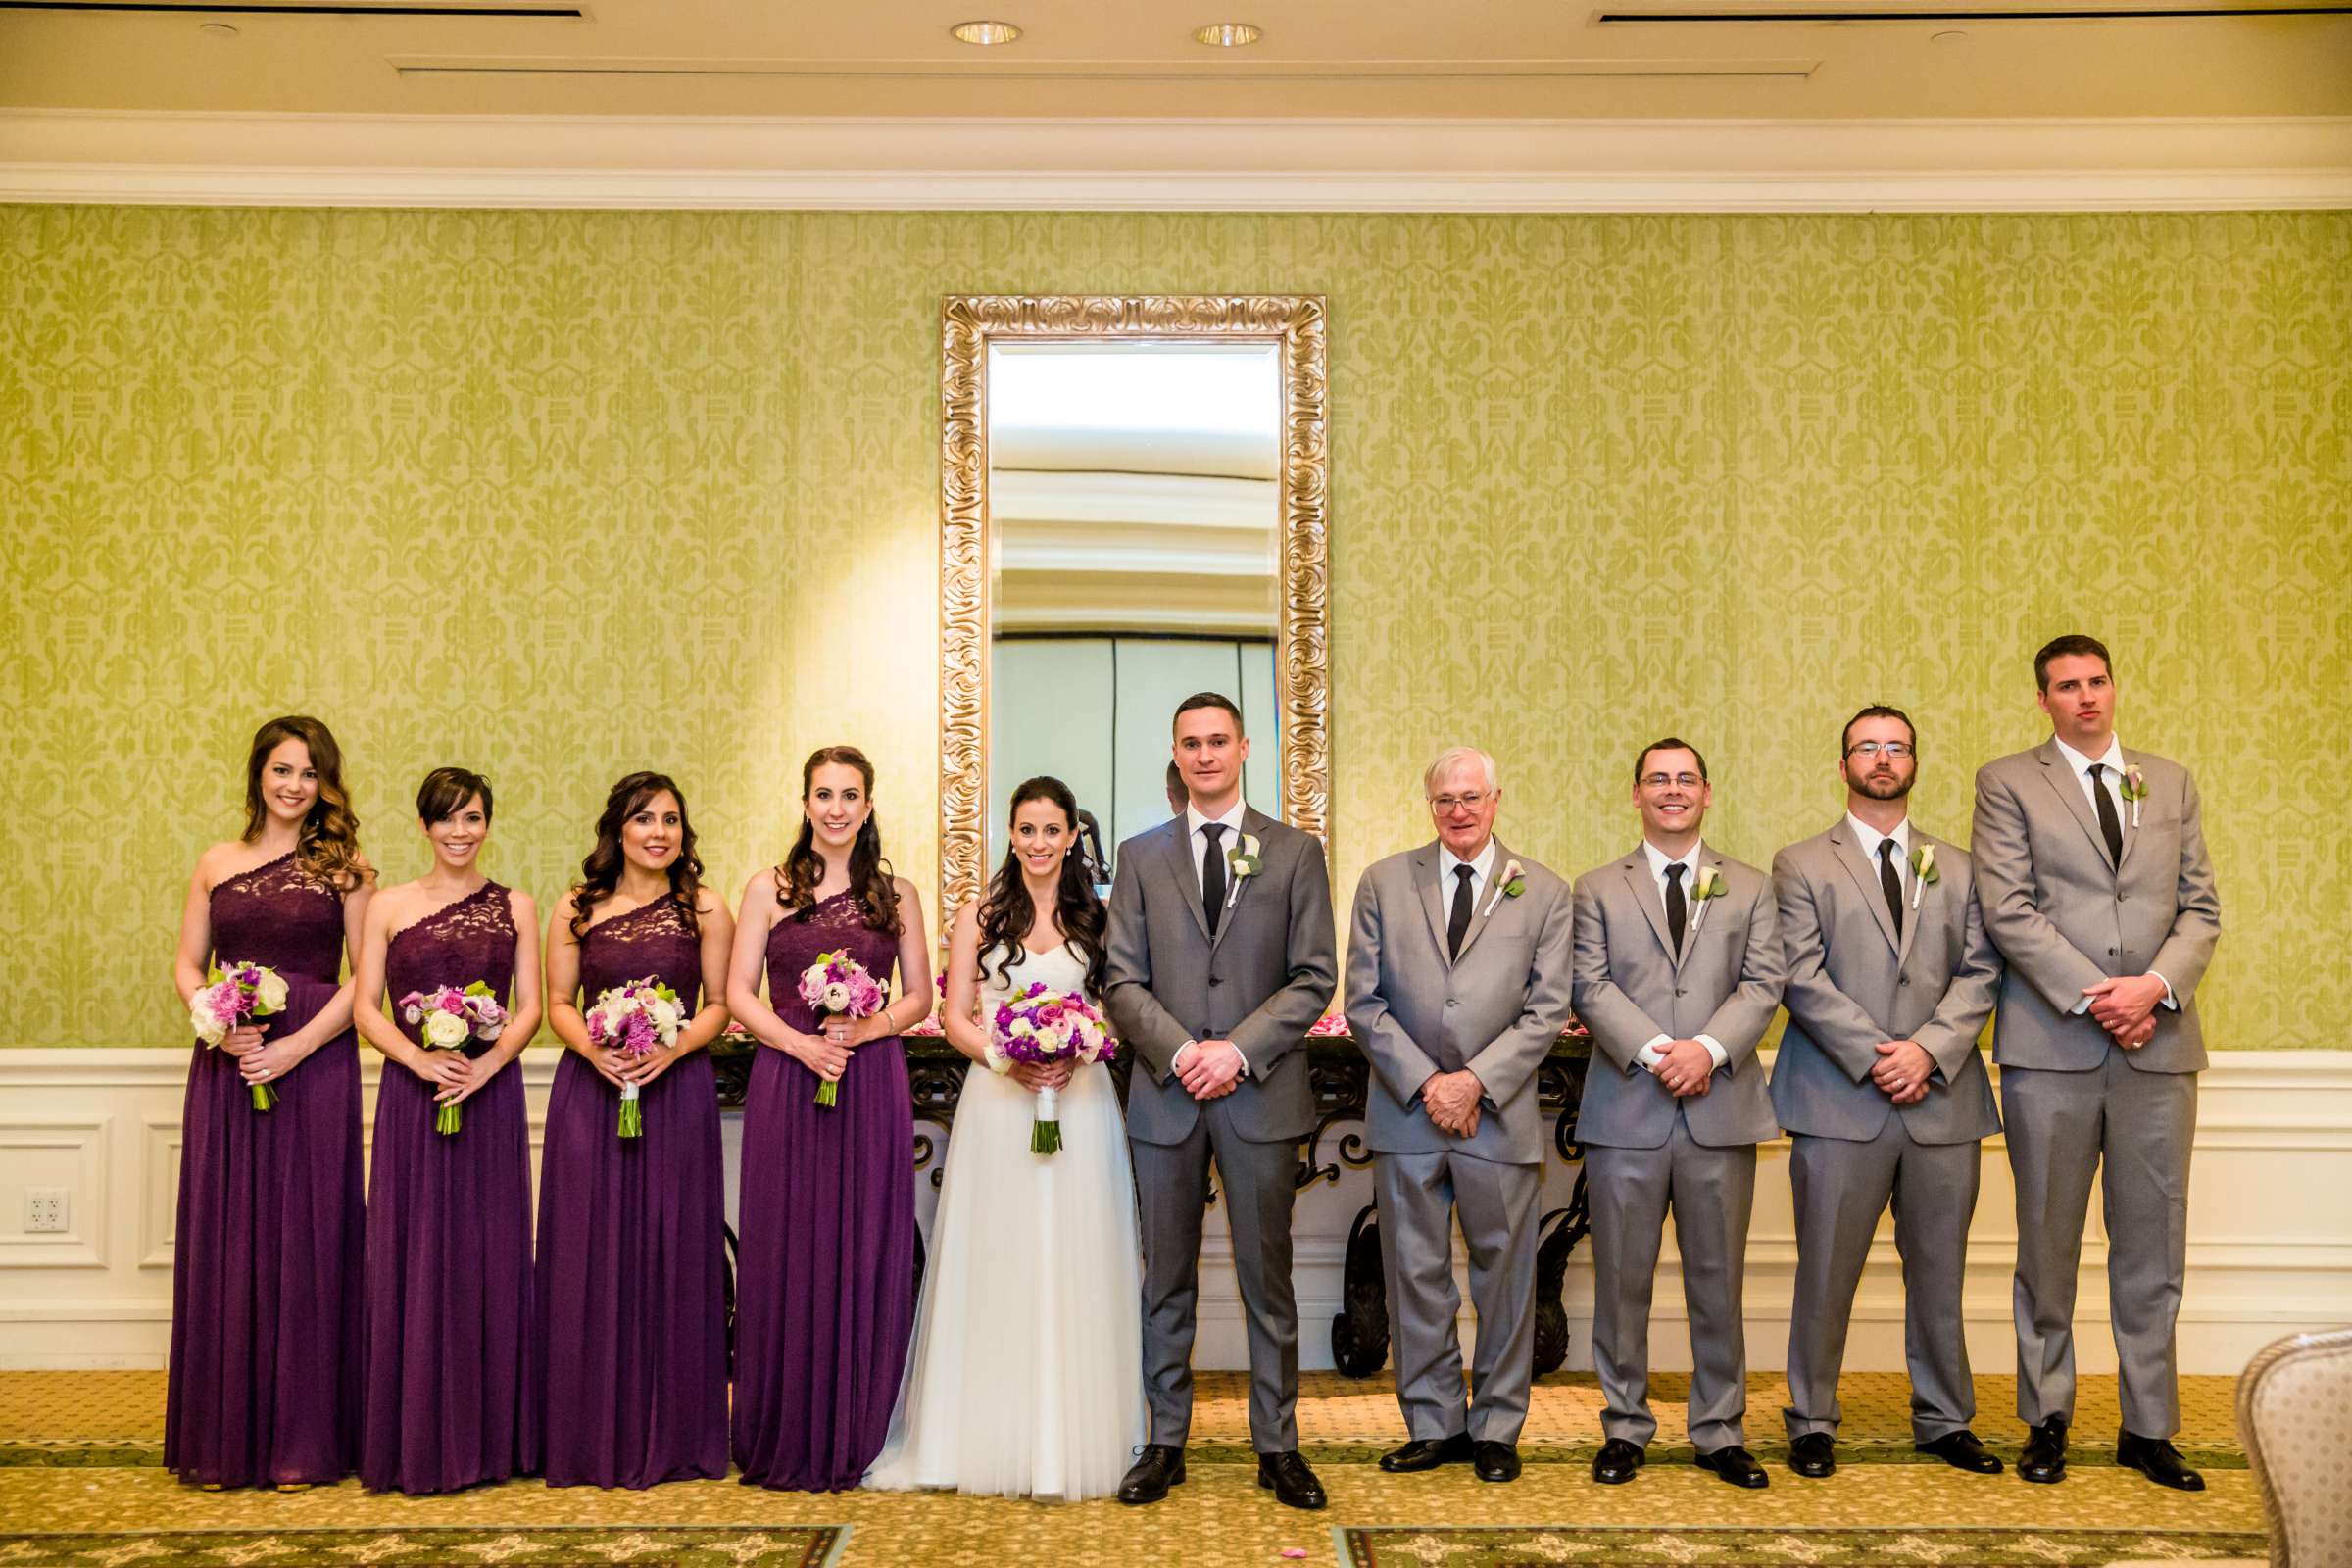 Park Hyatt Aviara Wedding, Jena and Keaton Wedding Photo #76 by True Photography